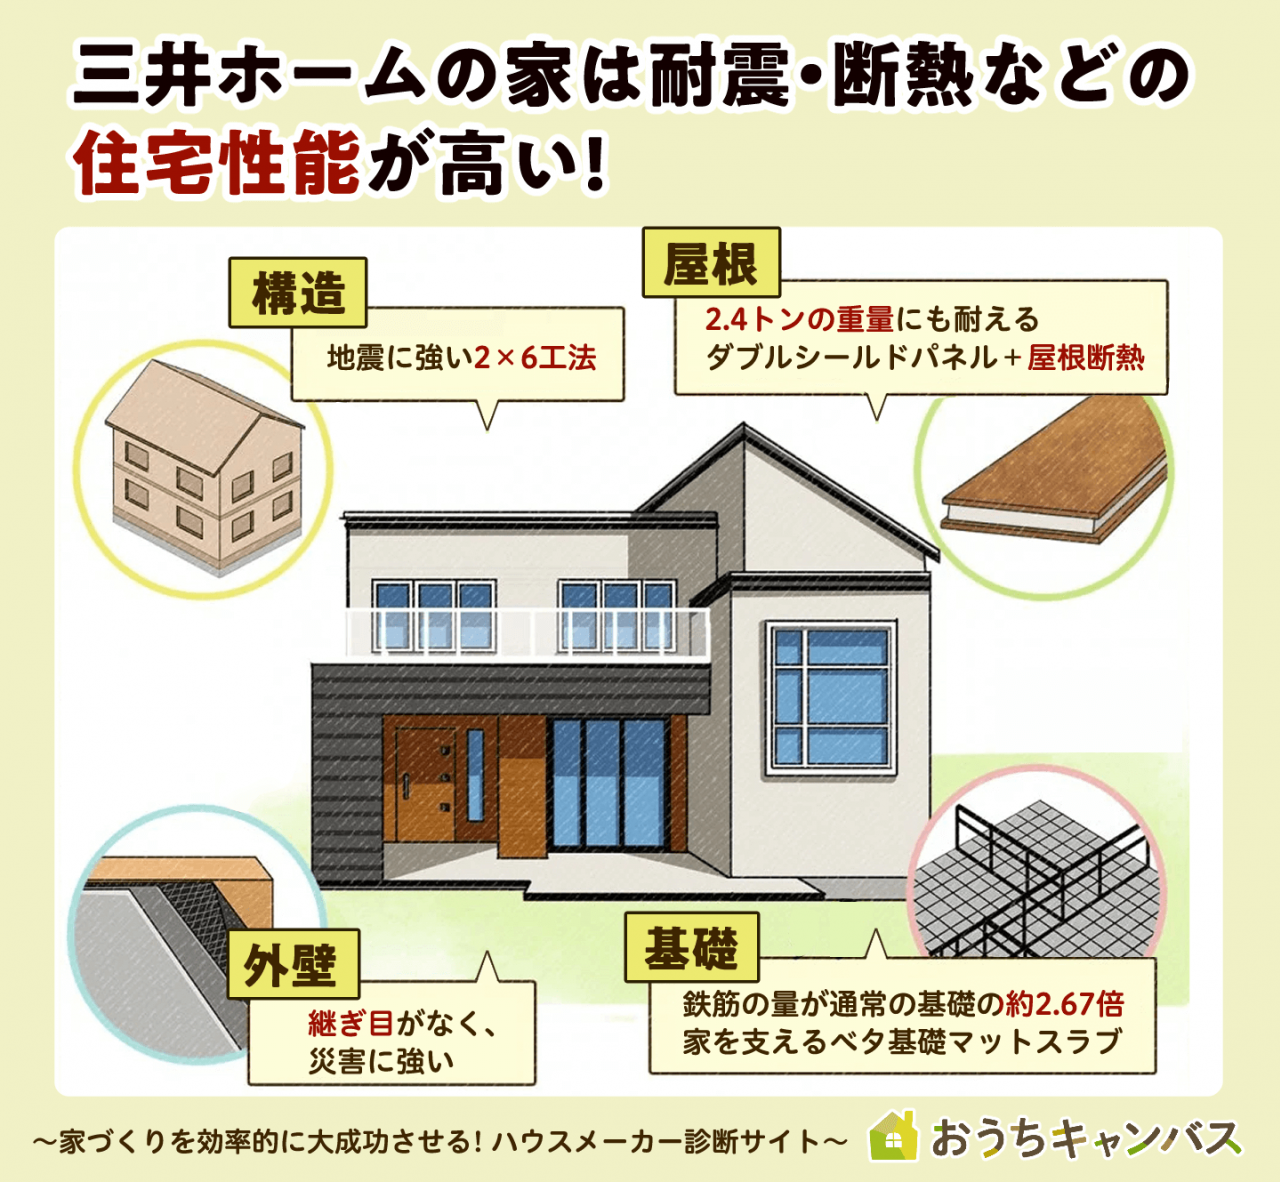 三井ホームの家は断熱・耐震などの住宅性能が高い